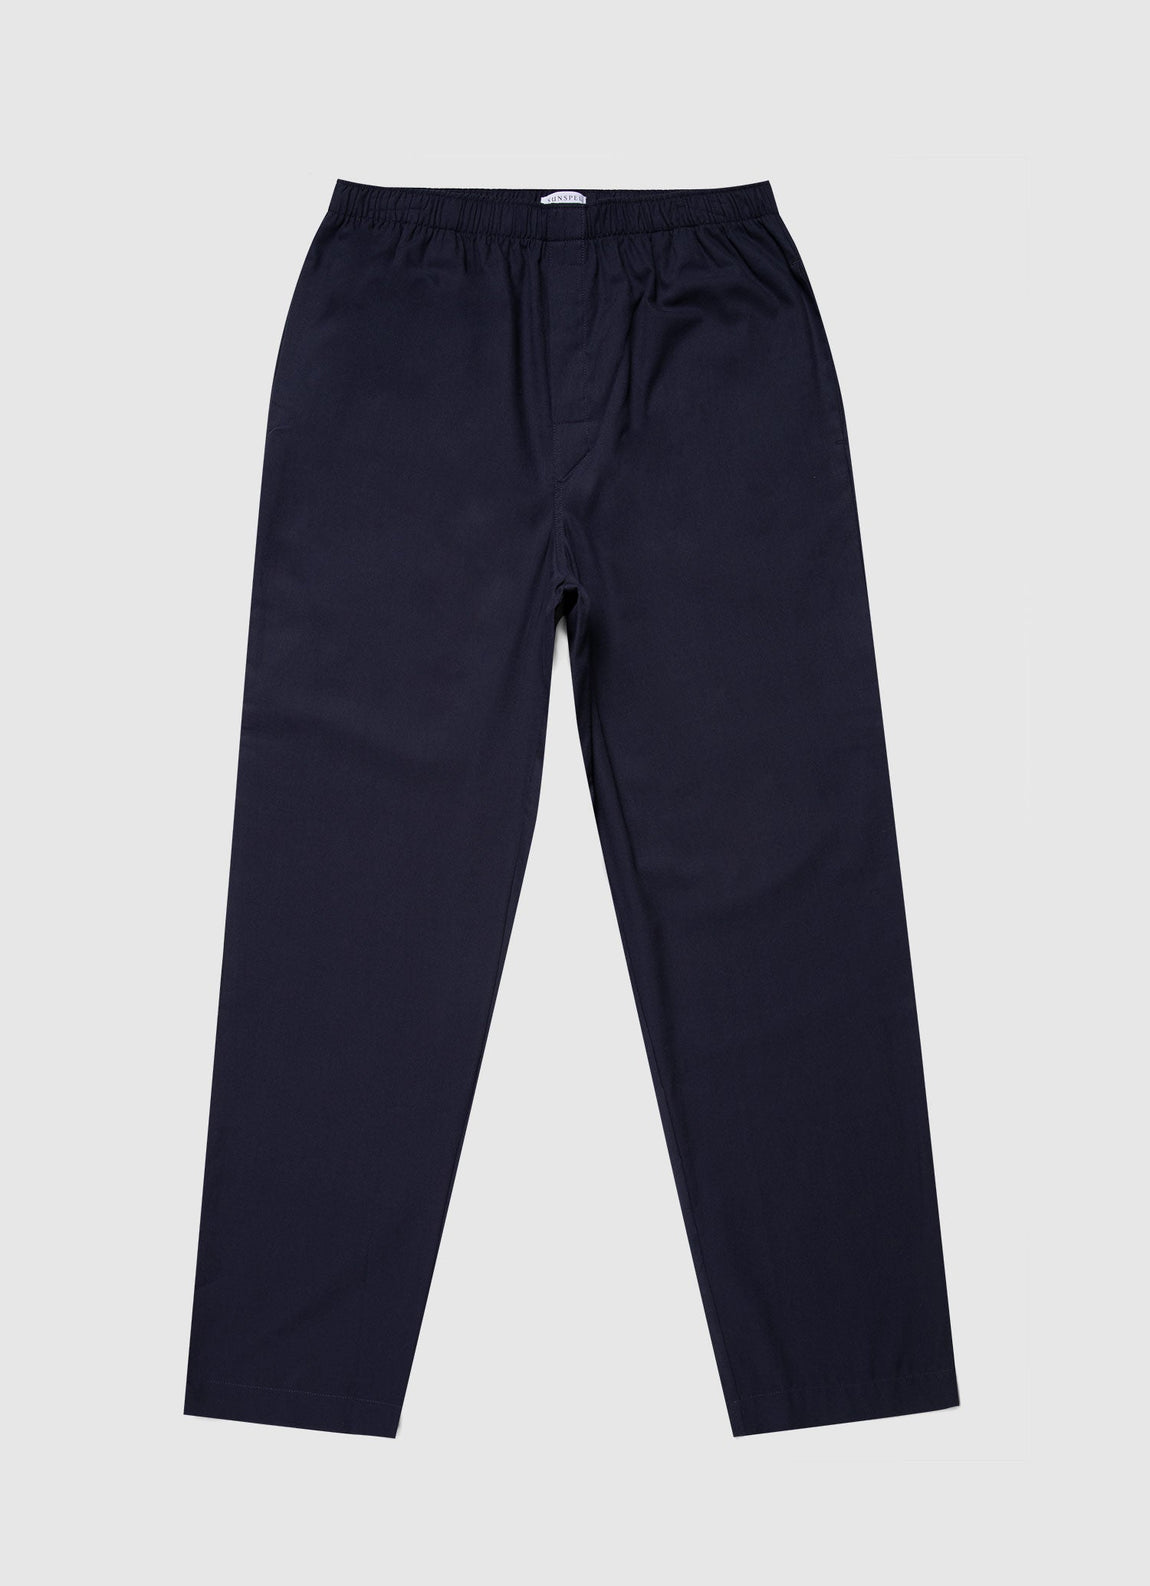 Men's Cotton Flannel Pyjama Trouser in Navy9